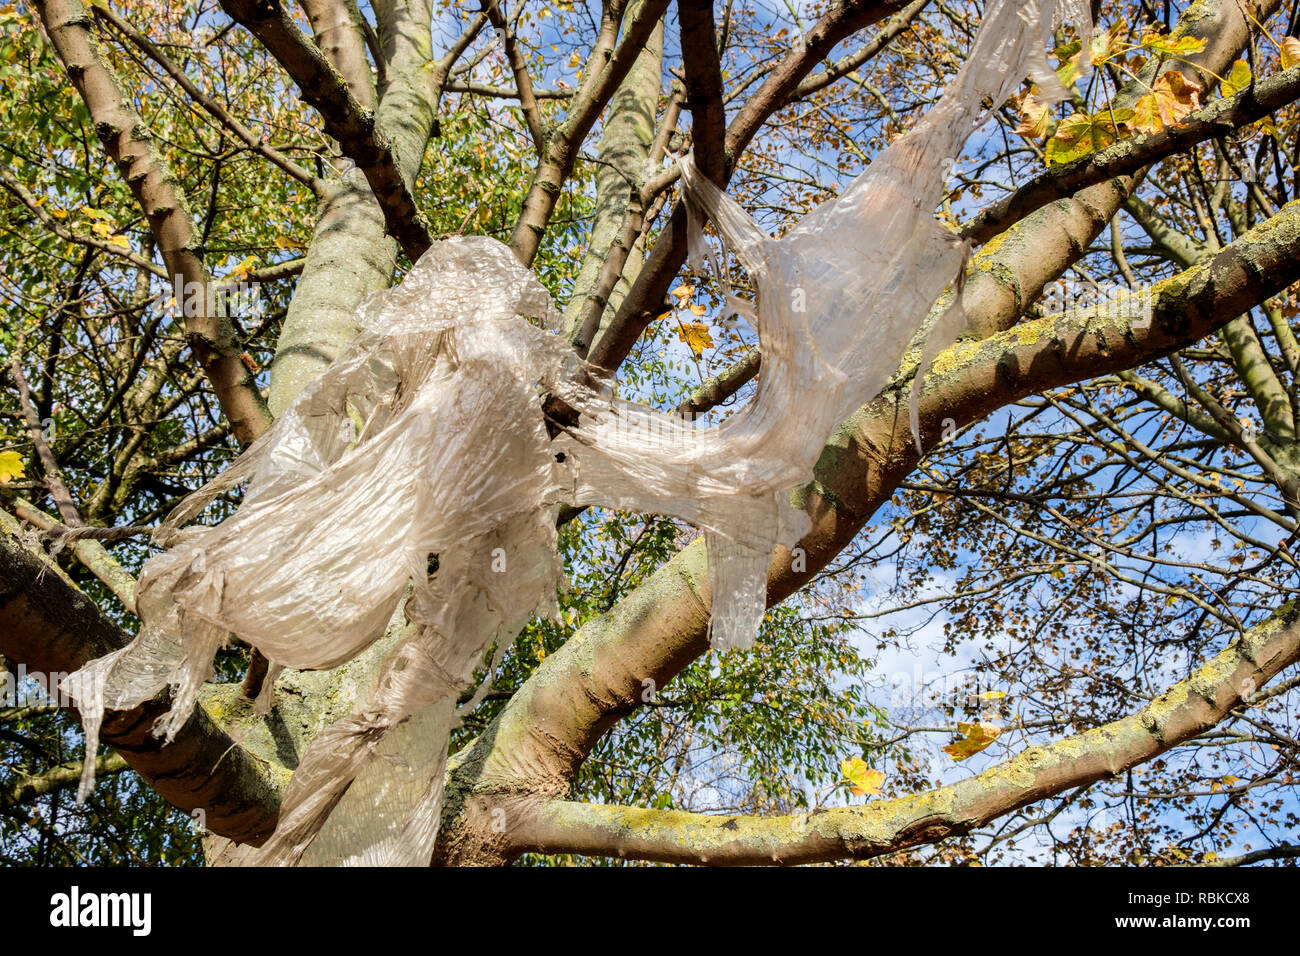 Les déchets plastiques. Bâches en plastique accroché à des branches dans un arbre de la création de la pollution de l'environnement, Nottingham, England, UK Banque D'Images